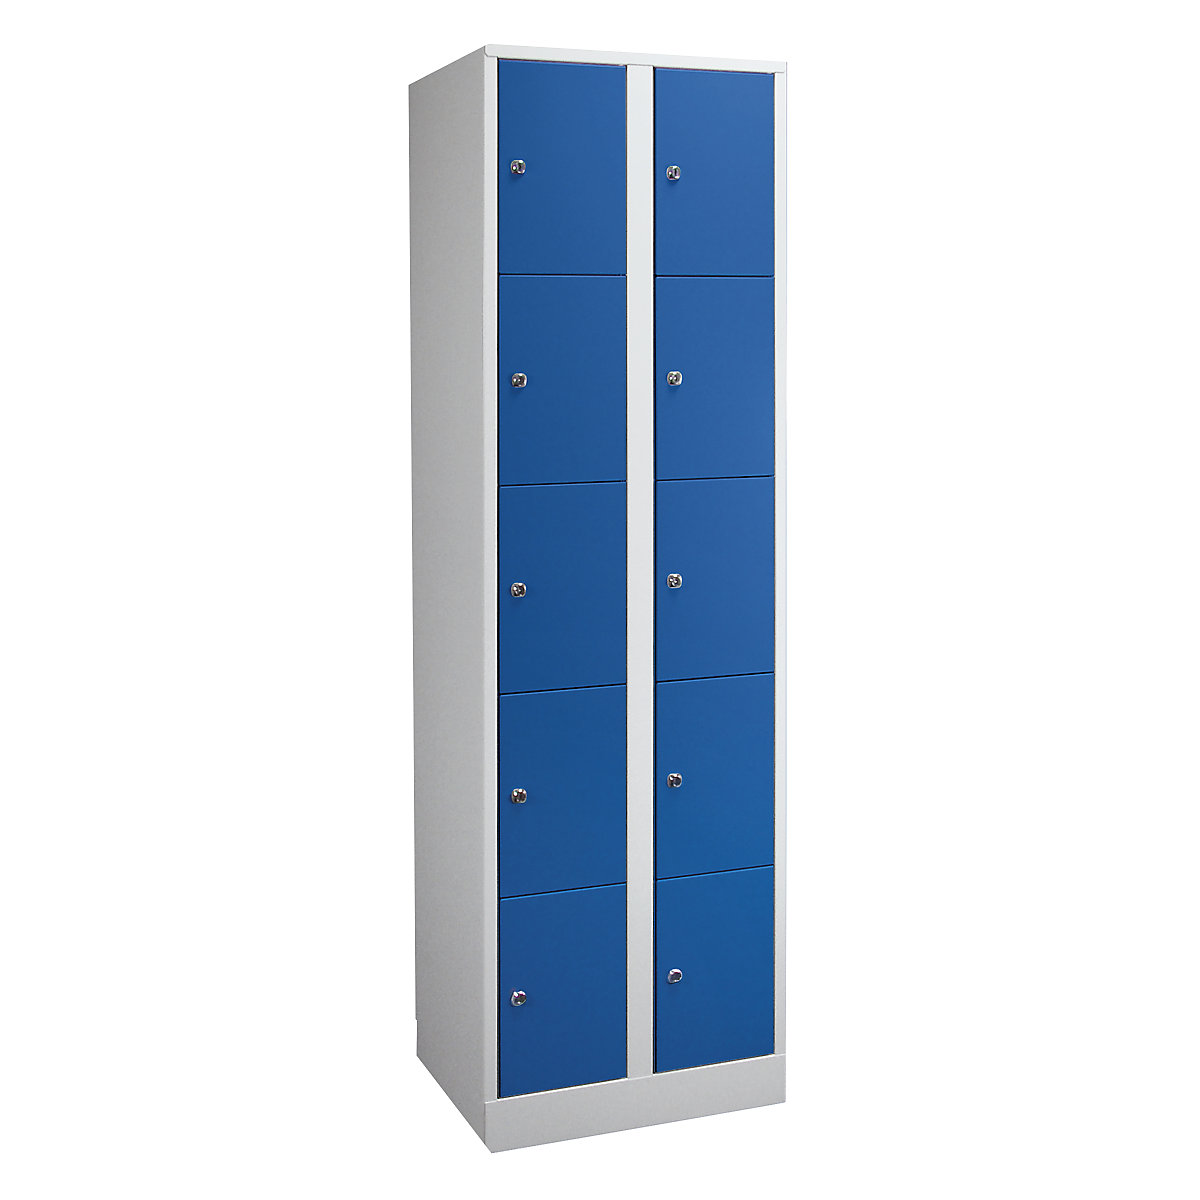 Wolf – Armoire à casiers verrouillables dimensions confort, 10 compartiments, largeur 600 mm, gris clair / bleu gentiane